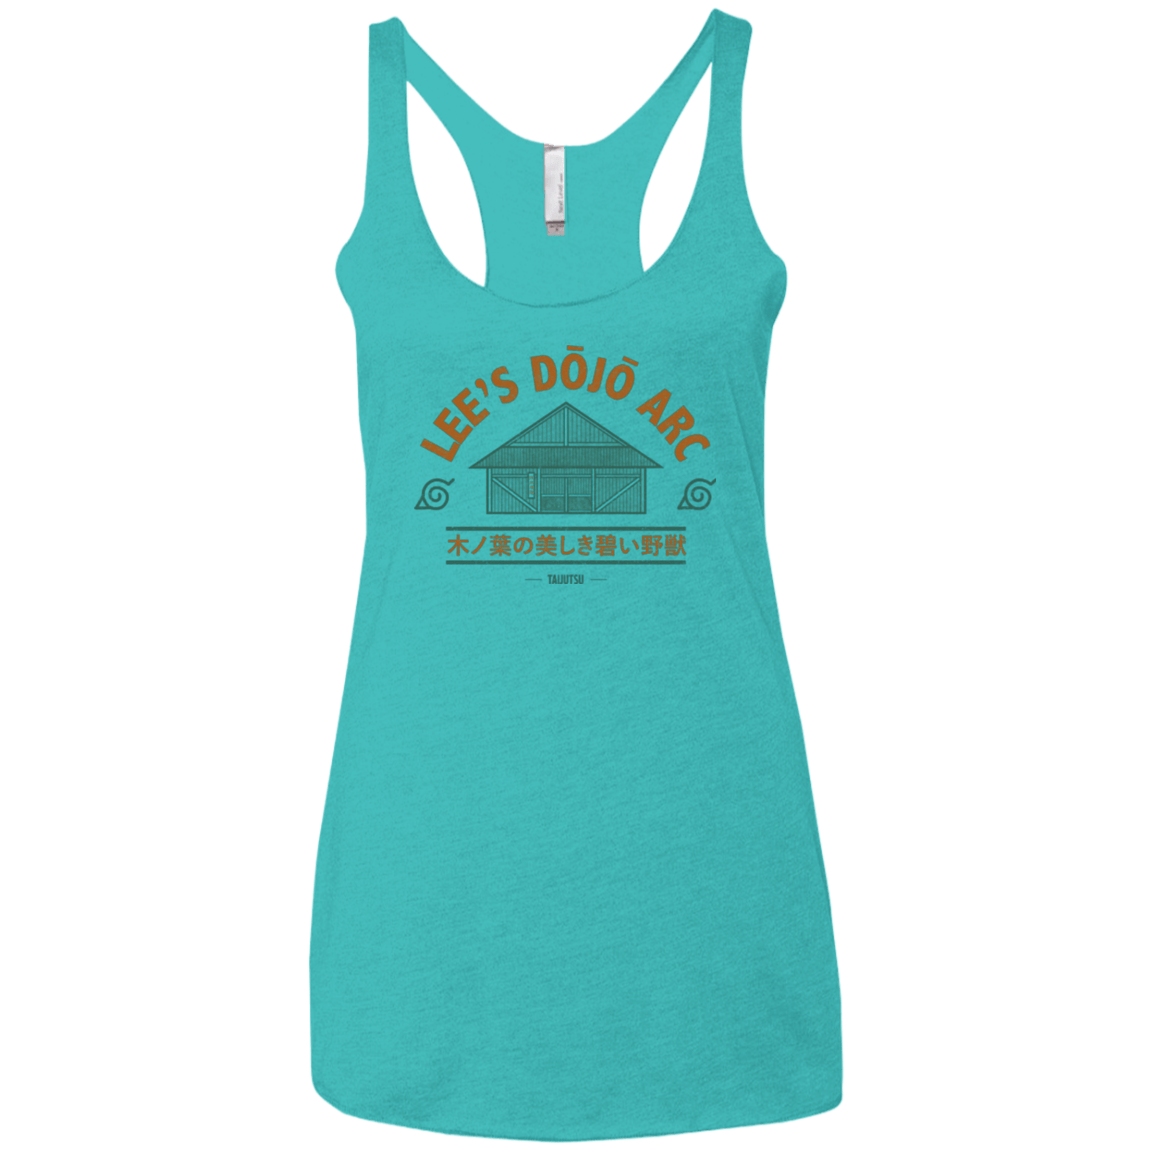 T-Shirts Tahiti Blue / X-Small Lee's Dojo Women's Triblend Racerback Tank